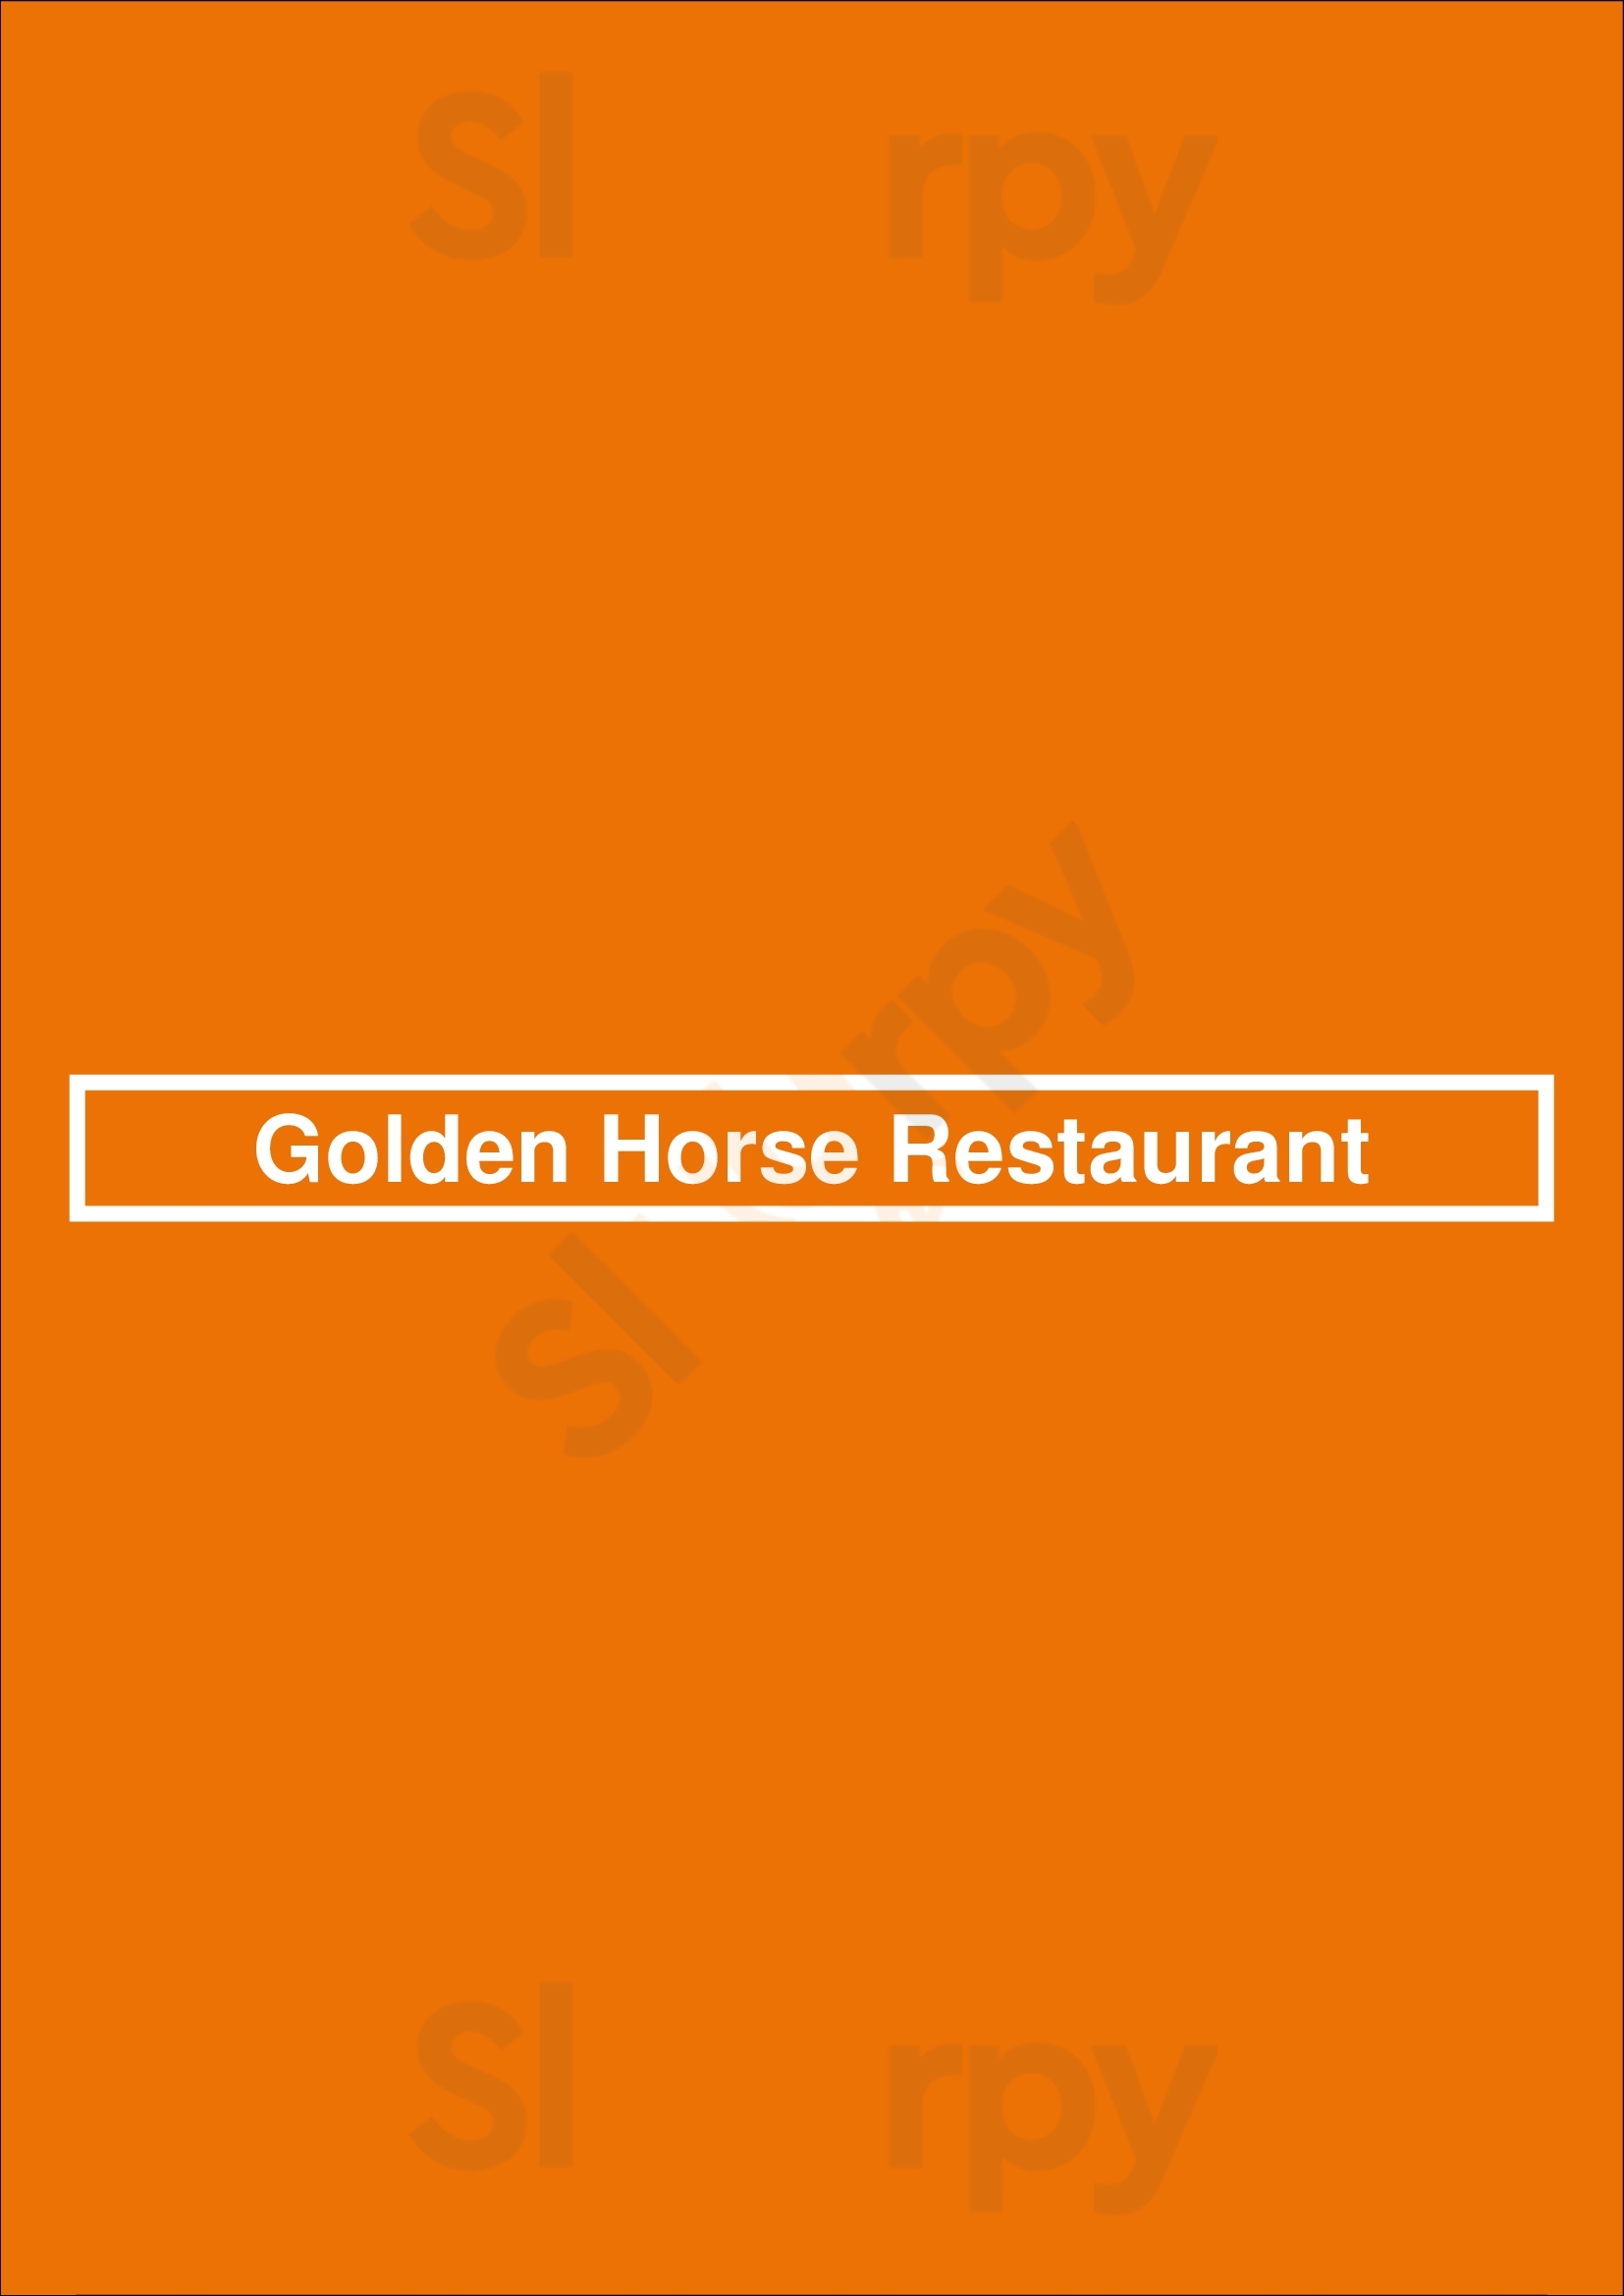 Golden Horse Restaurant Richmond Hill Menu - 1